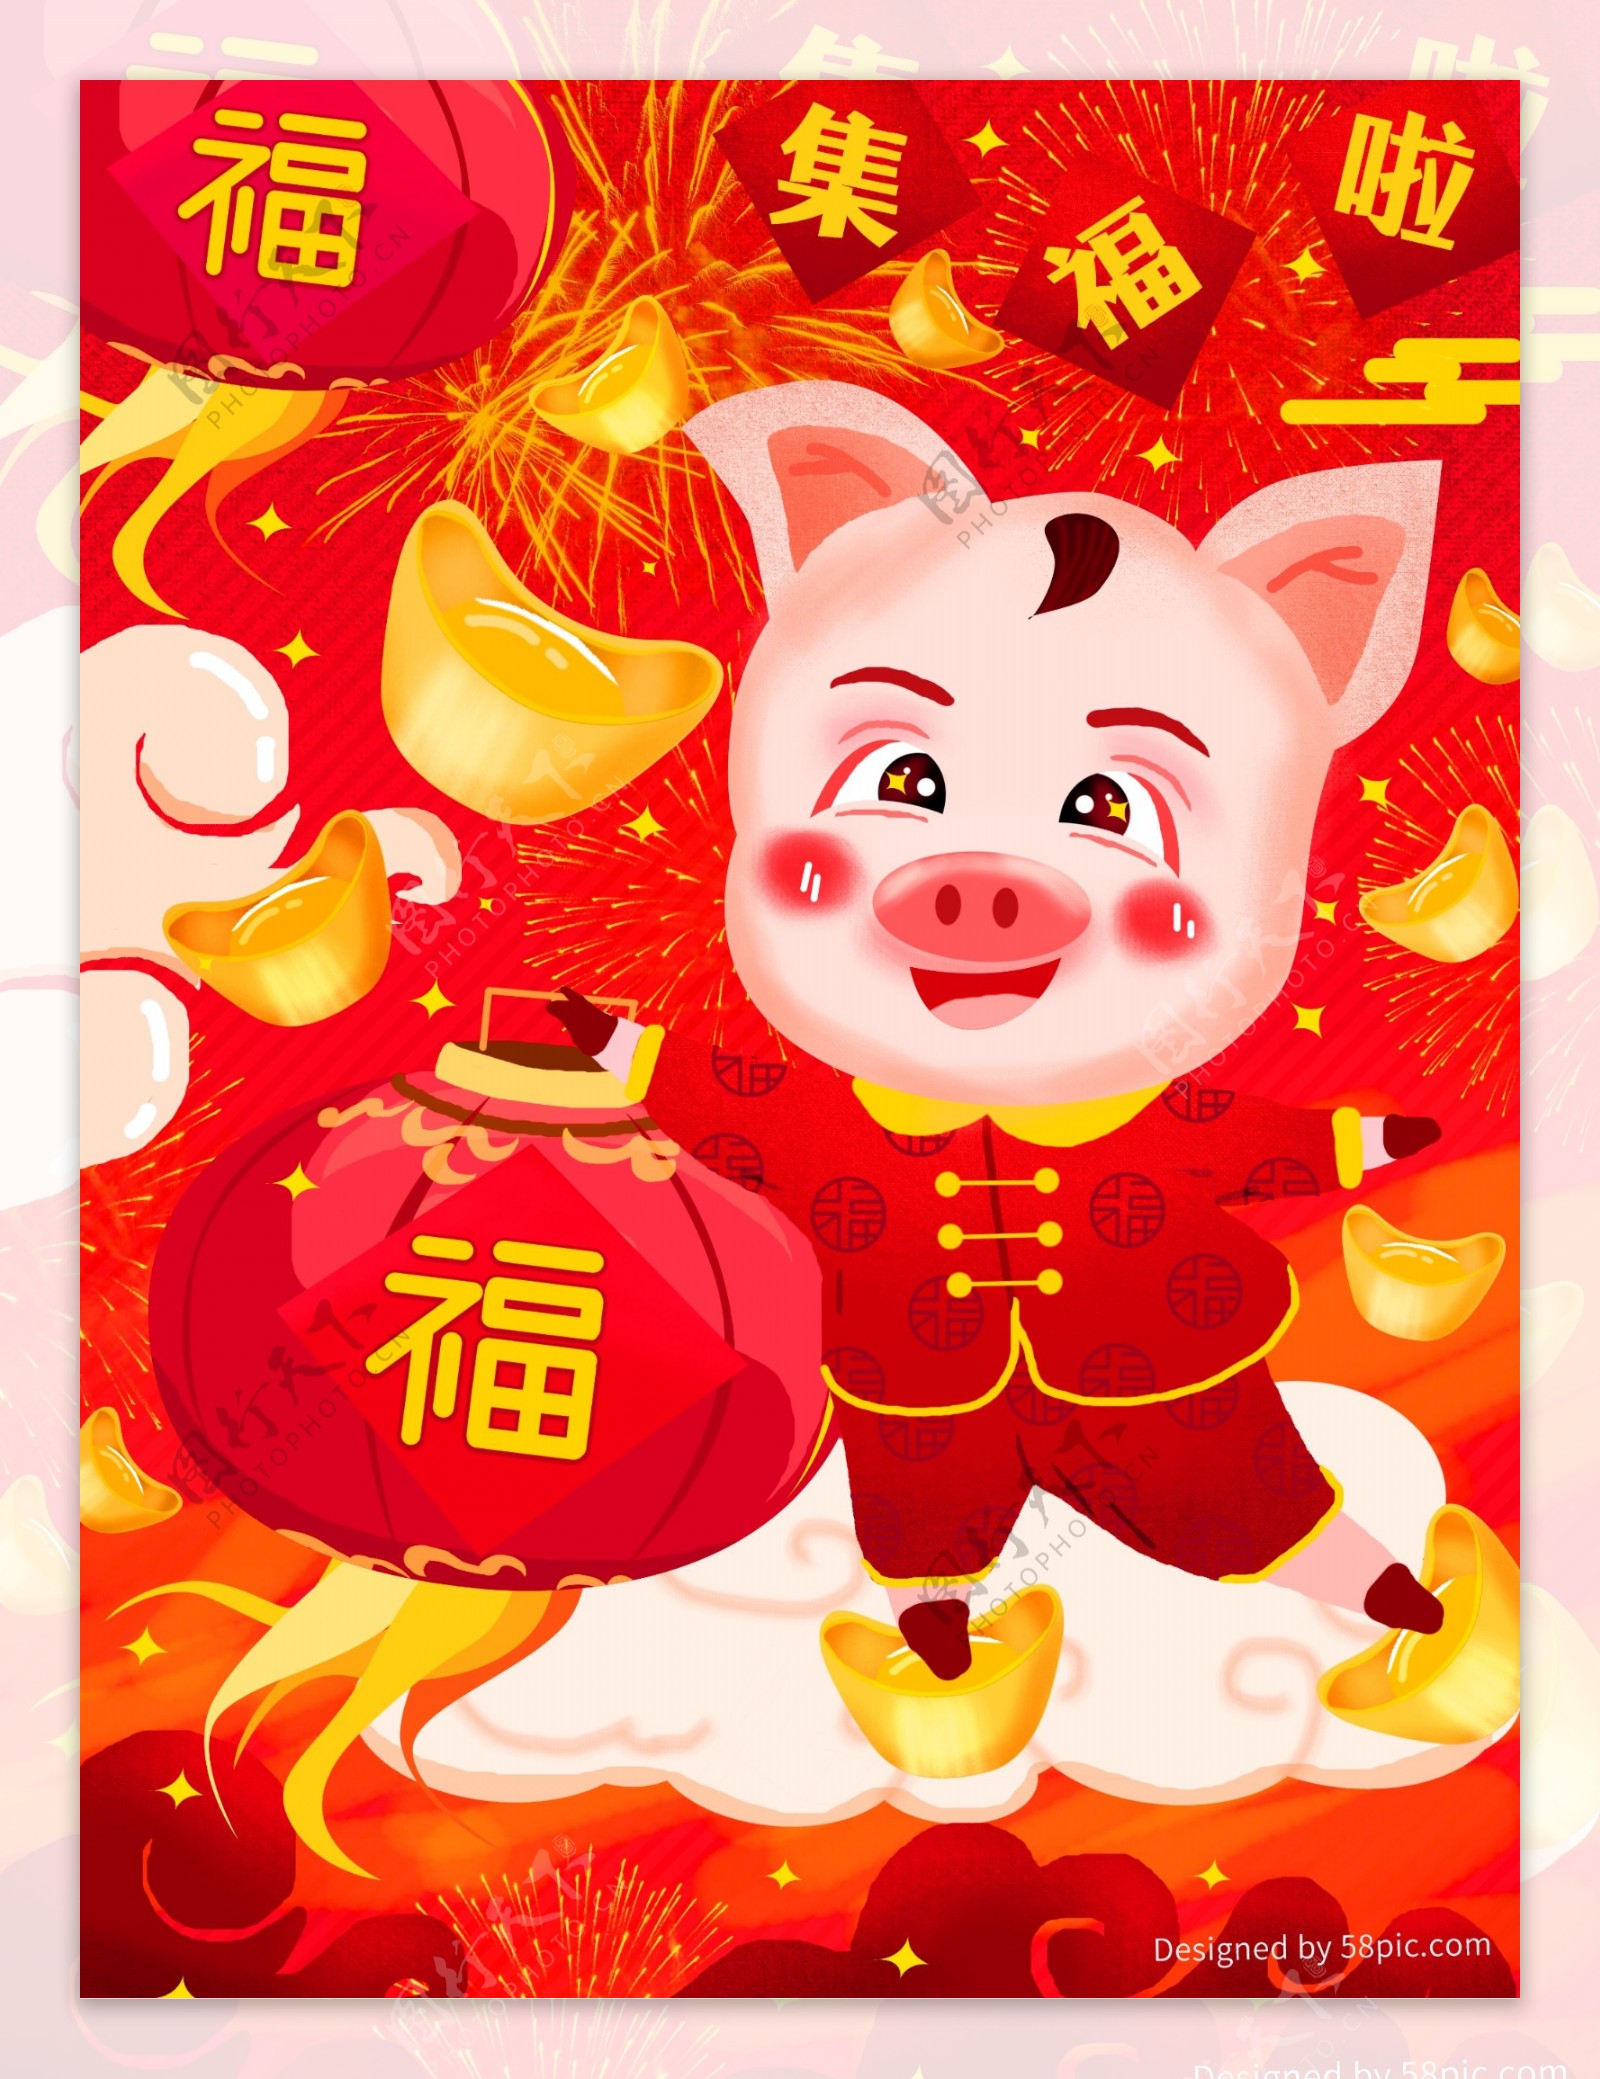 原创新年猪年集福字红色喜庆插画